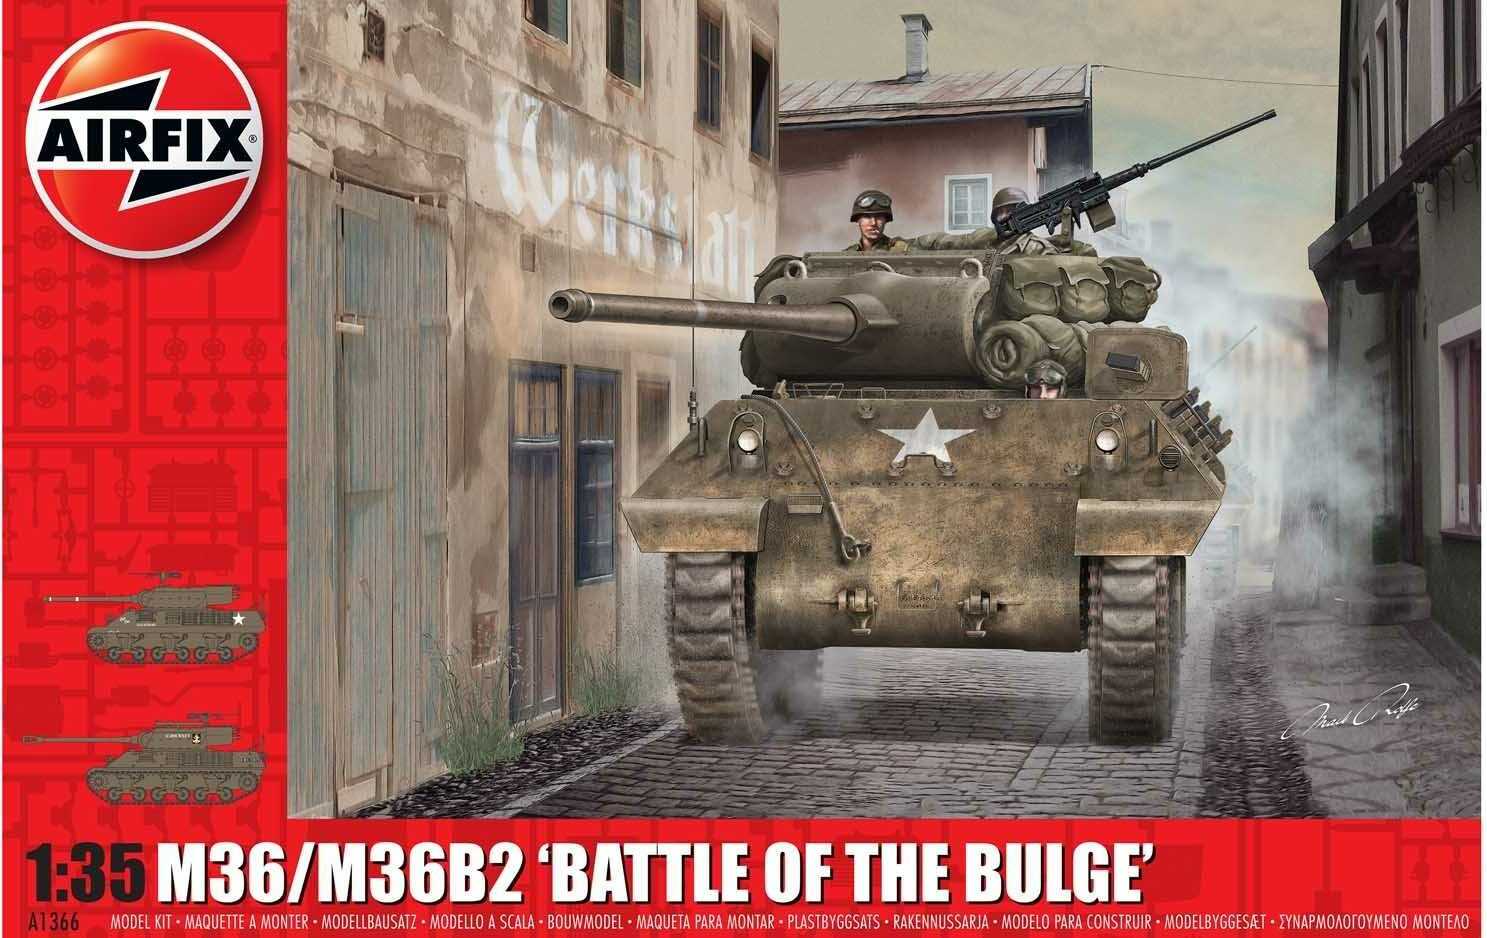 Classic Kit tank A1366 - M36 / M36B2 "Battle of the Bulge" (1:35)